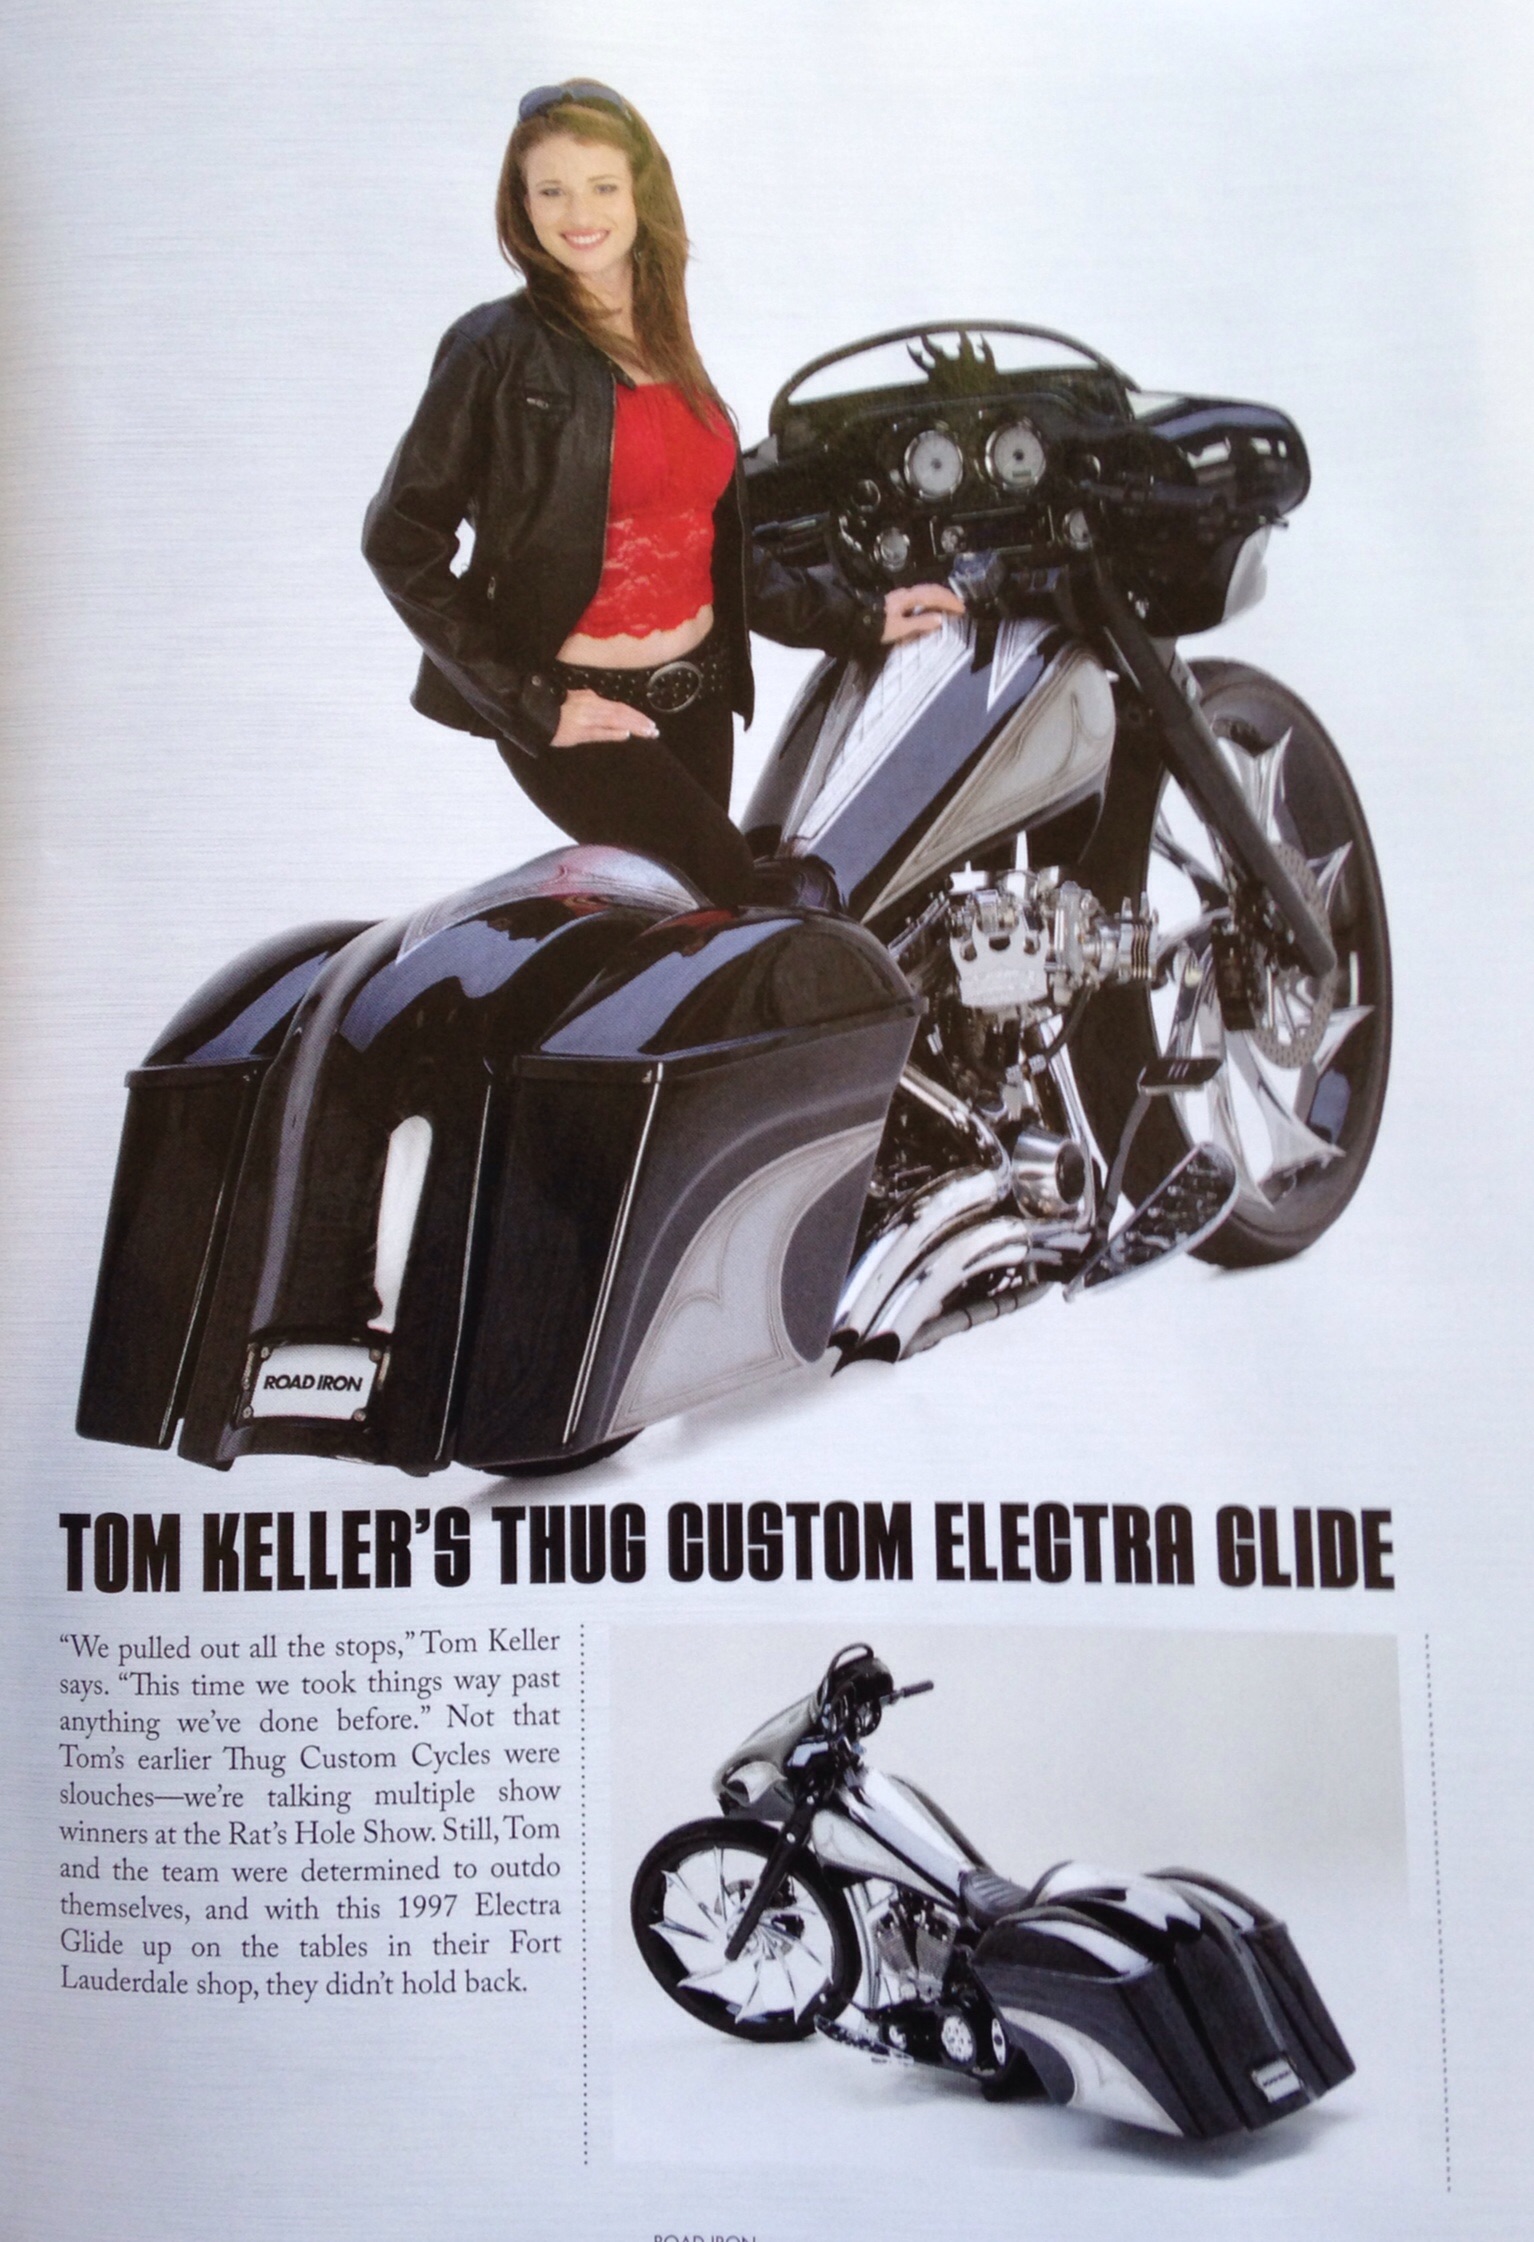 Tom Keller's Electra Glide